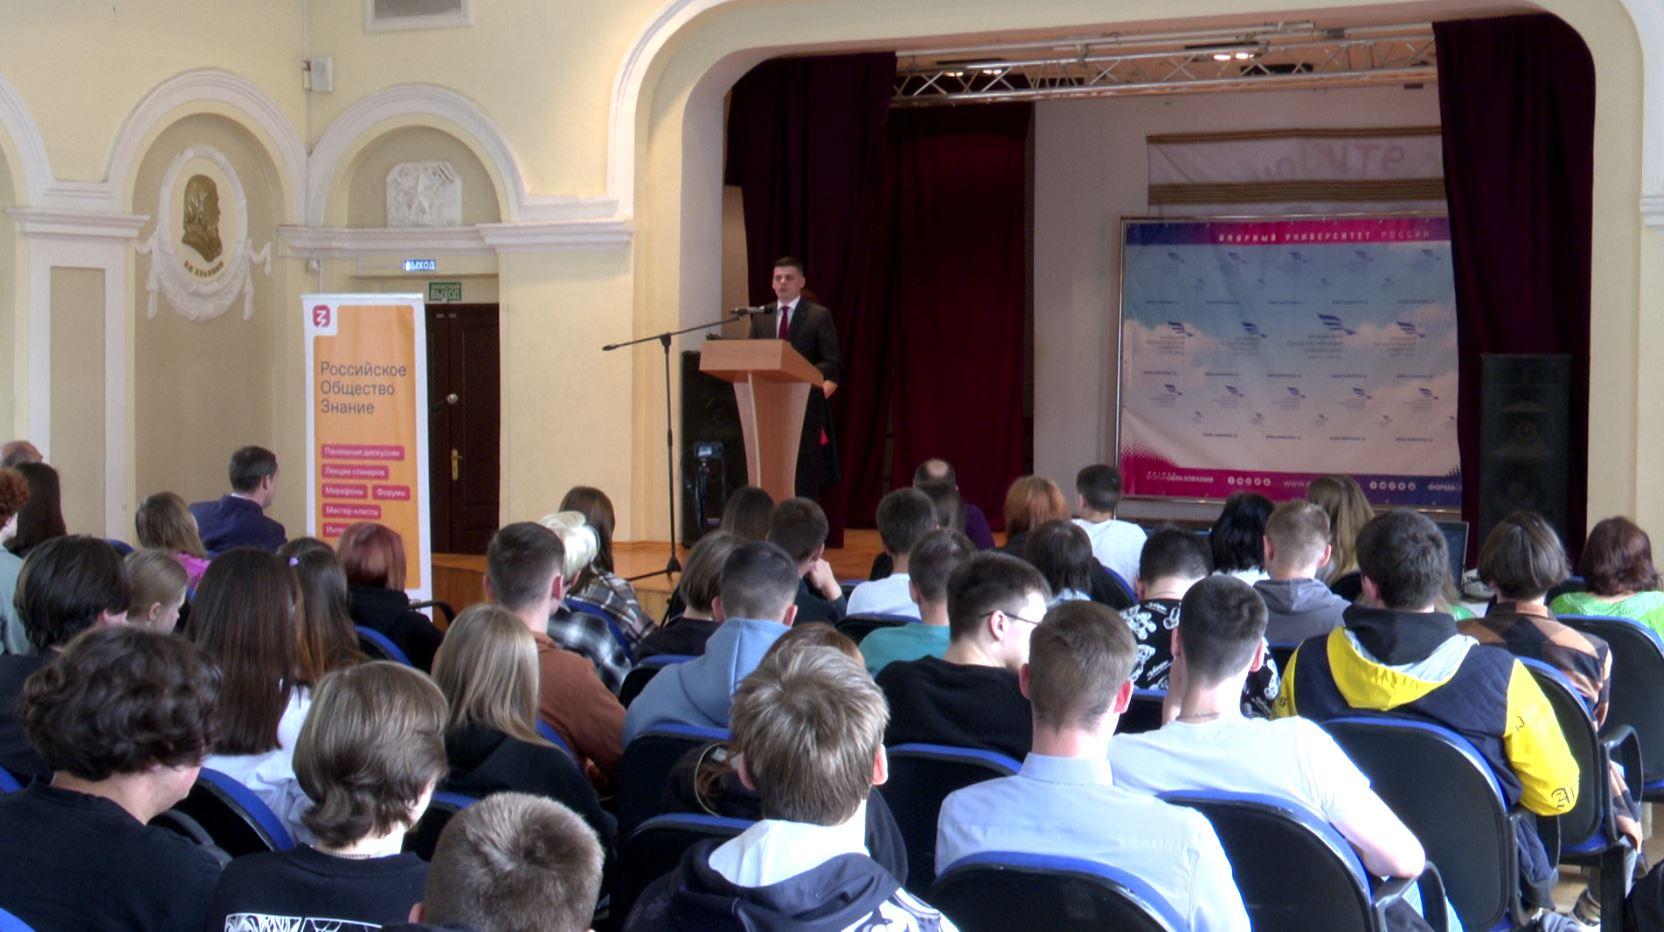 Орловское общество «Знание» организует «Школу-интенсив лектора»